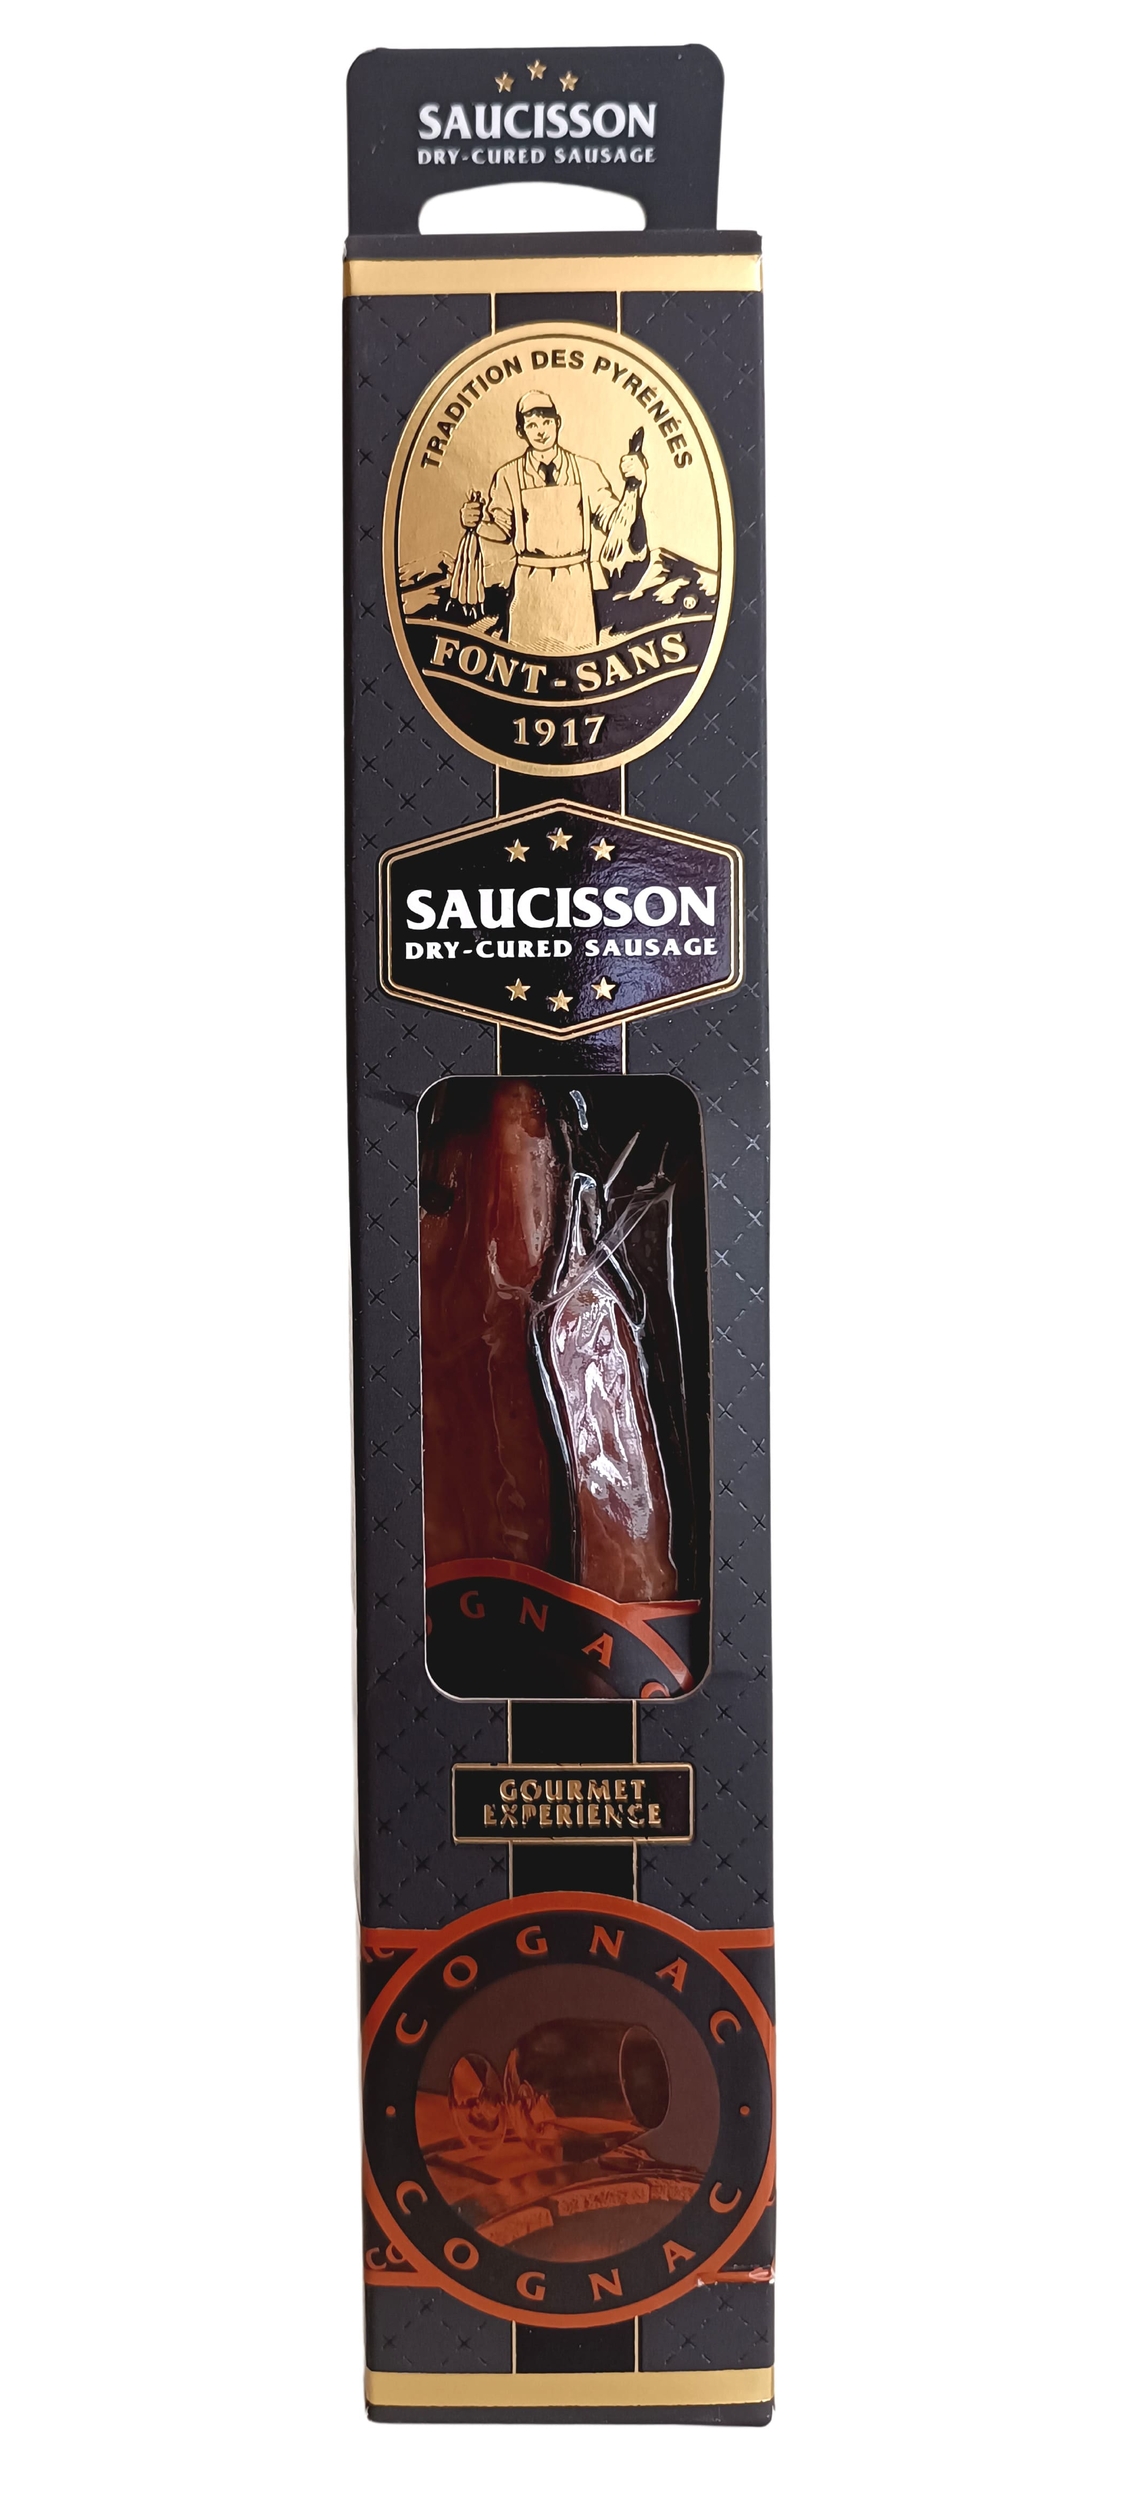 Font-Sans-Saucisson paysan cognac VSOP-1